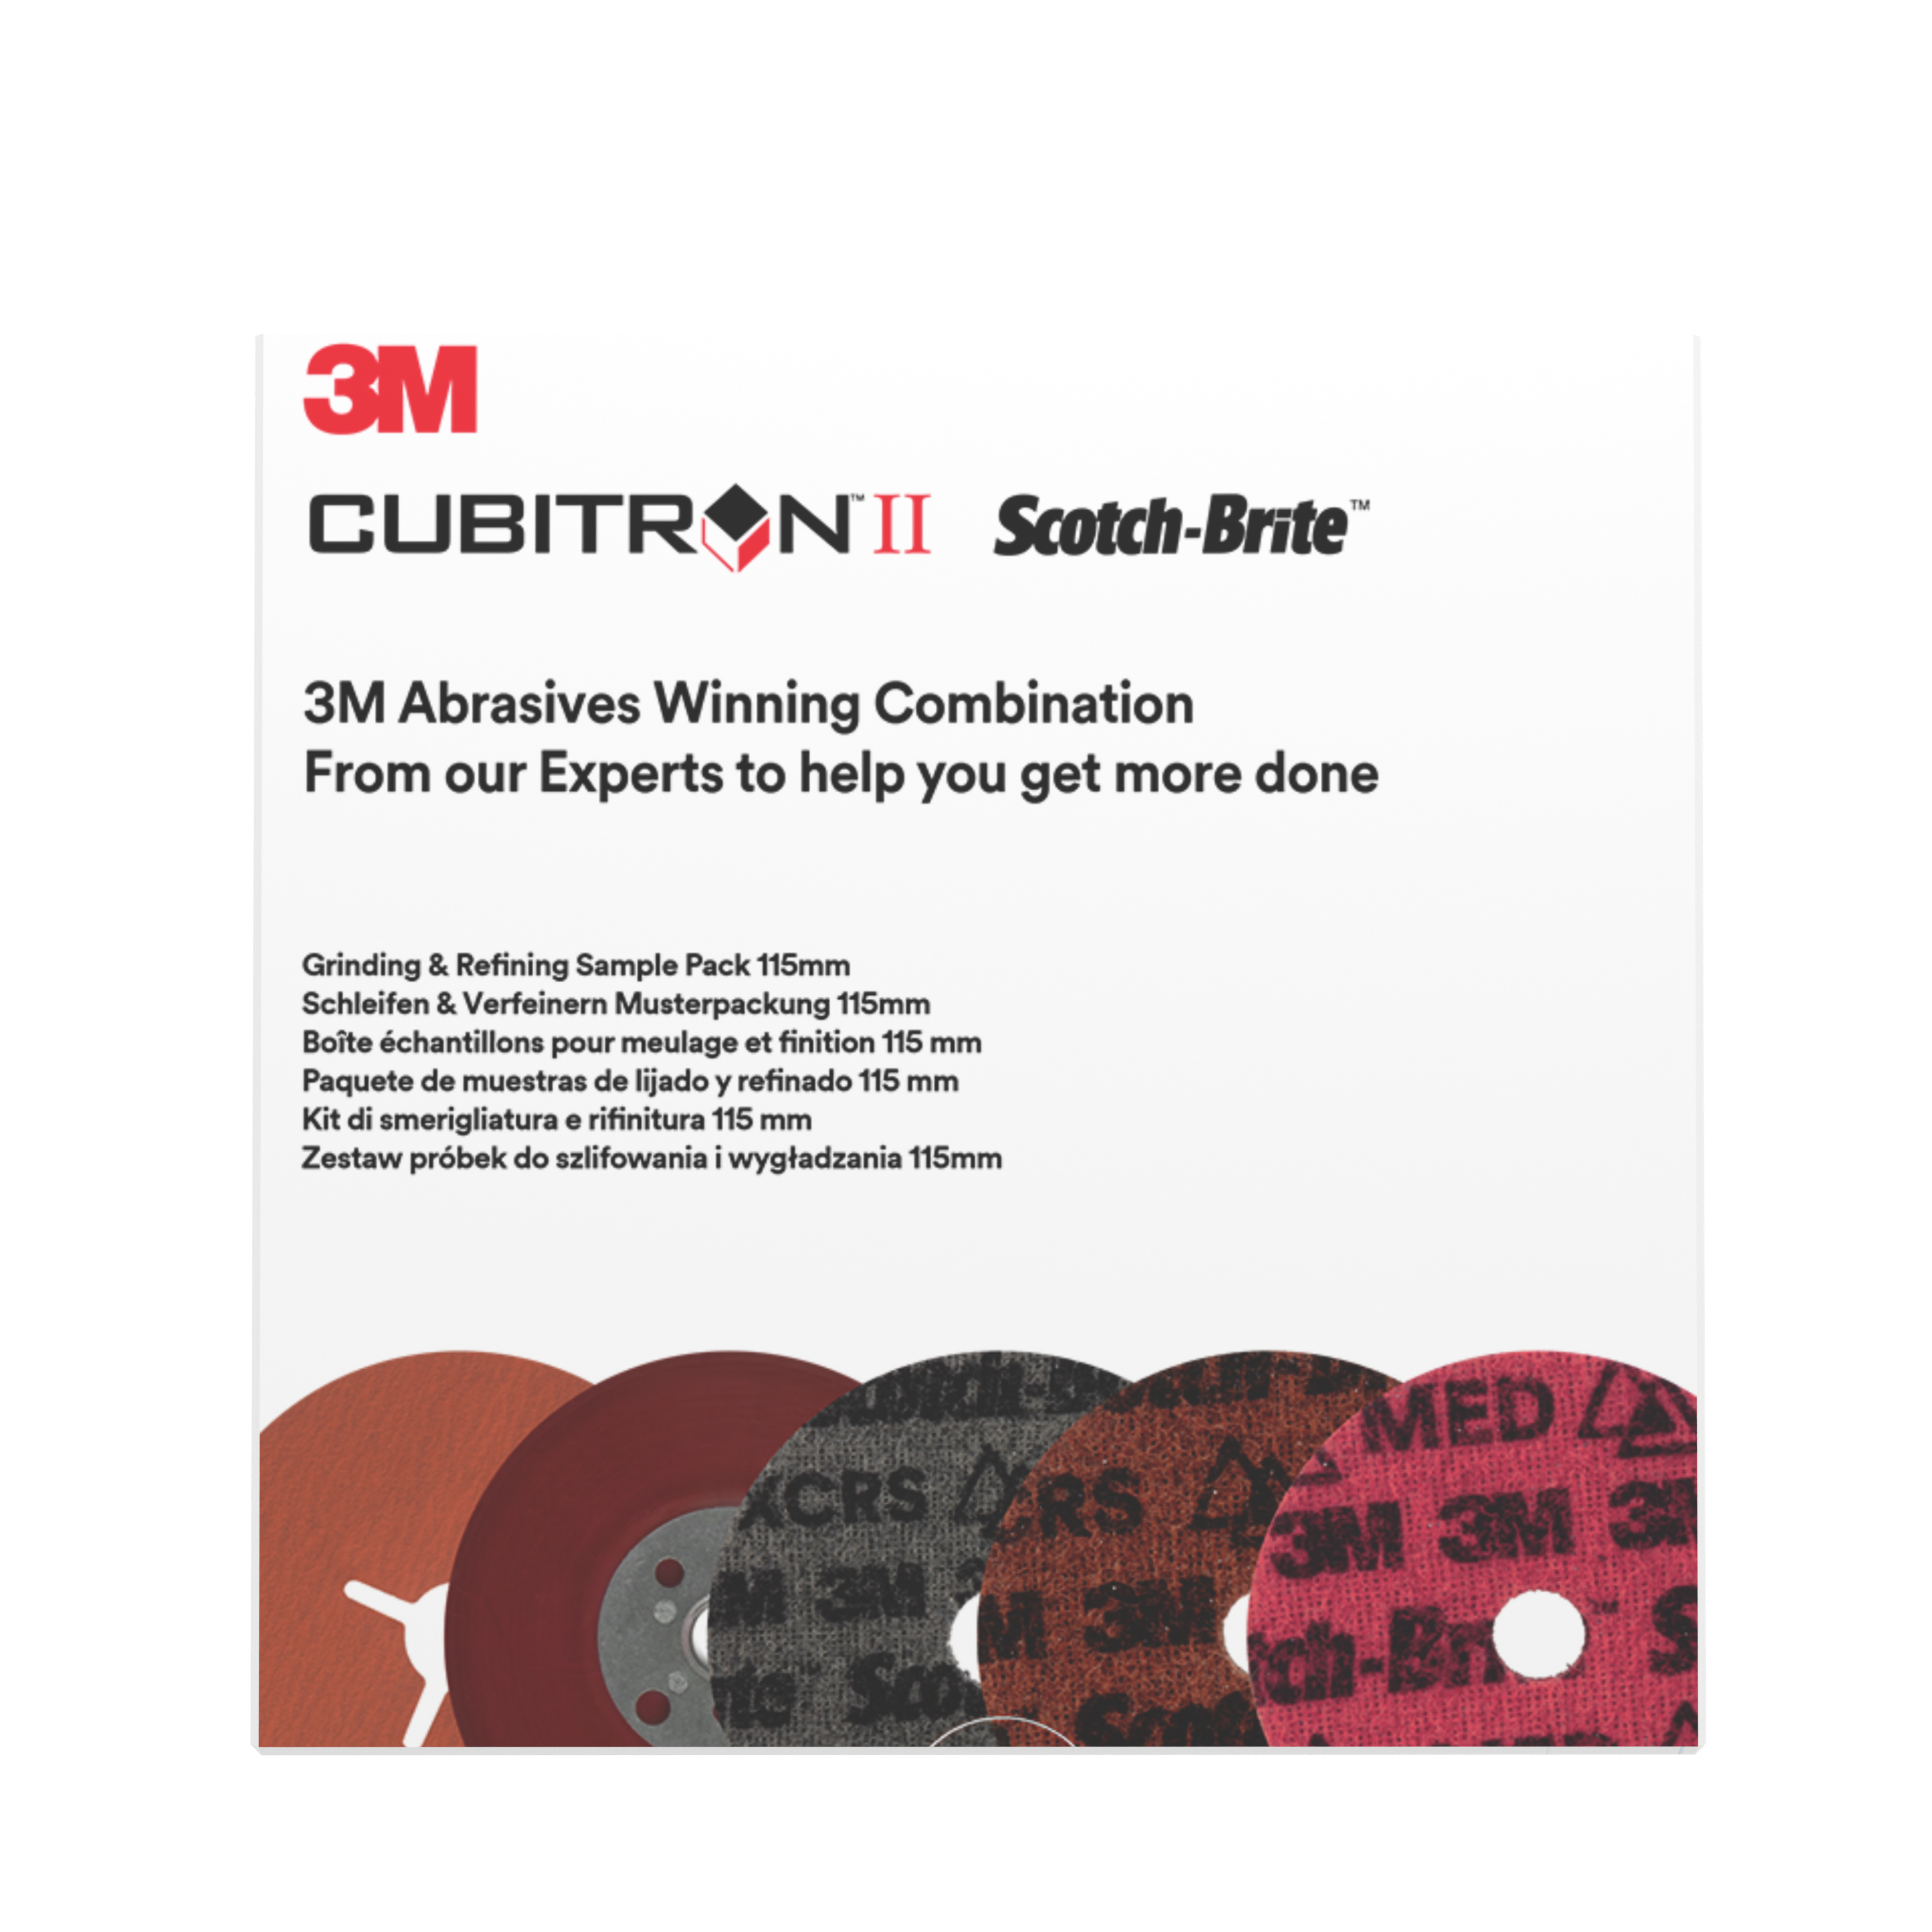 3M™ | Grinding & Refining Kit | enthält 115mm 787C Fiber- und PN-DH Vliesscheibe, mit flachem Stützteller Muster